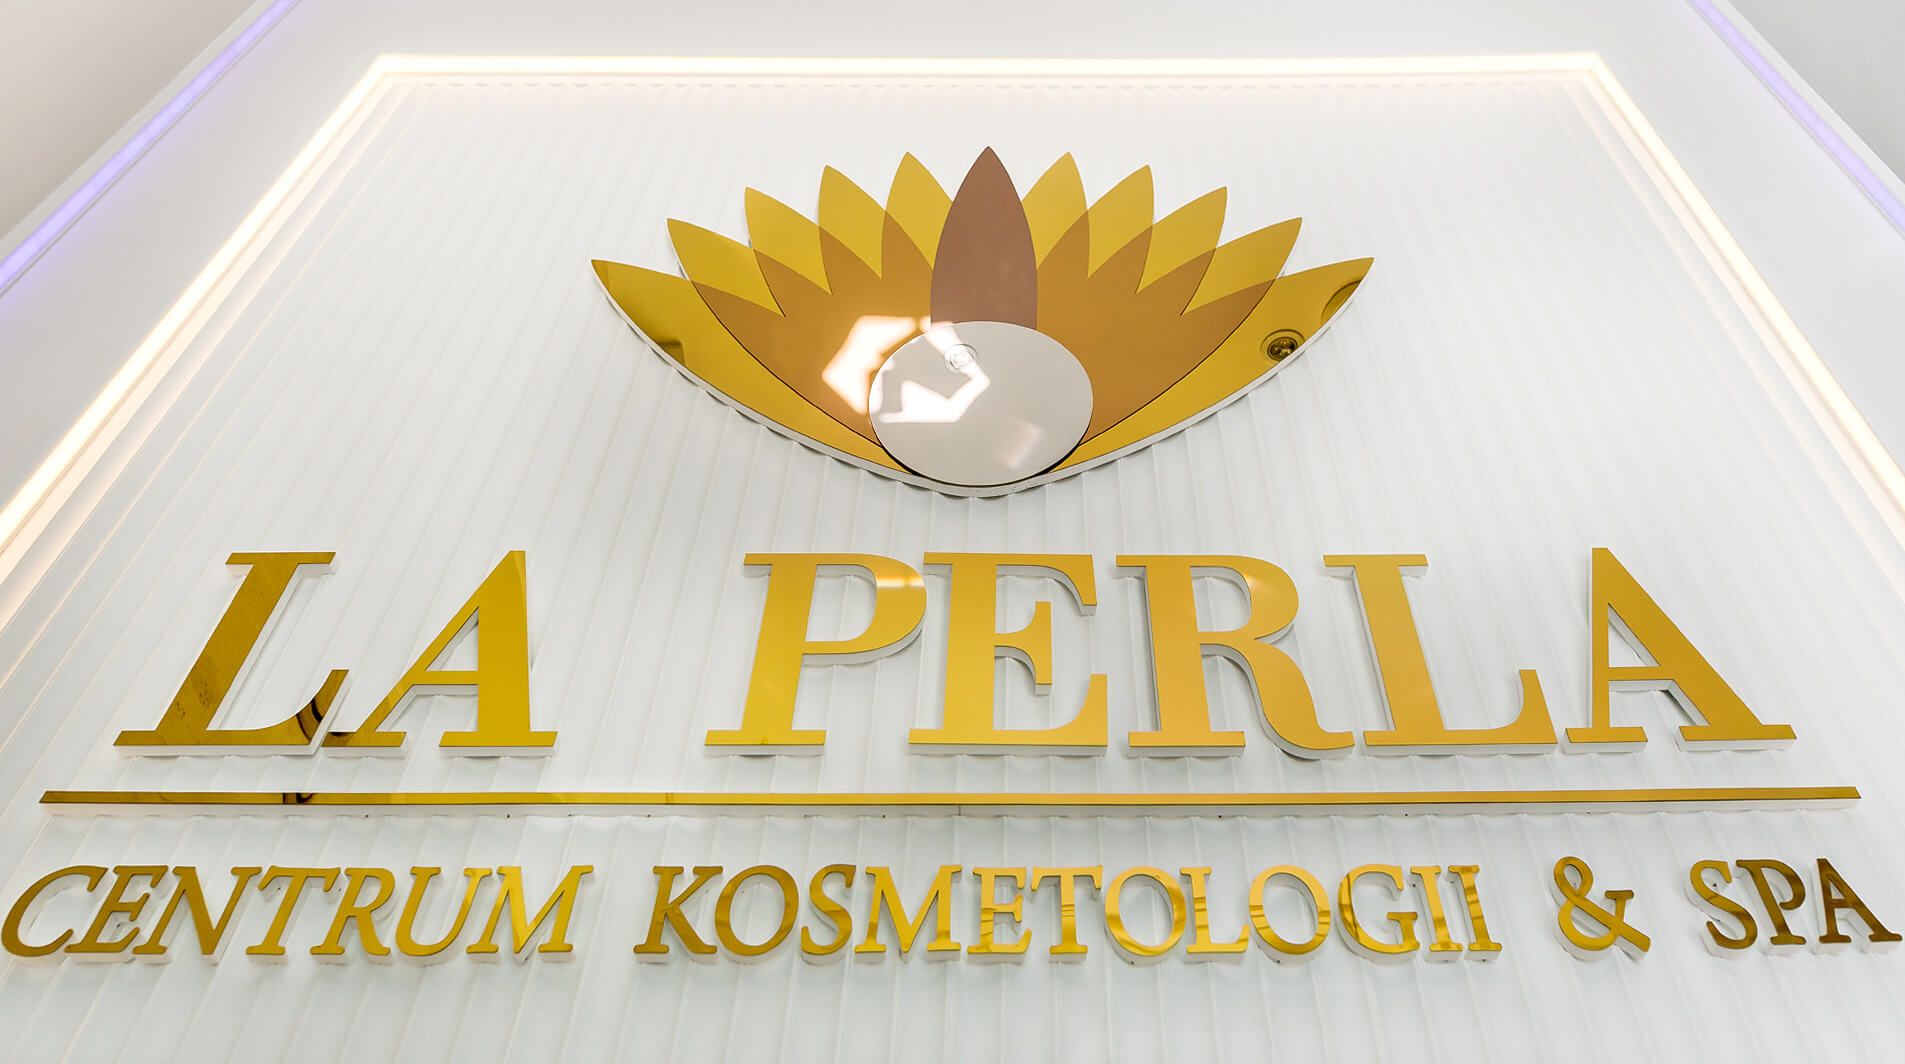 LA PERLA - litery przestrzenne 3D w kolorze złotym z logo